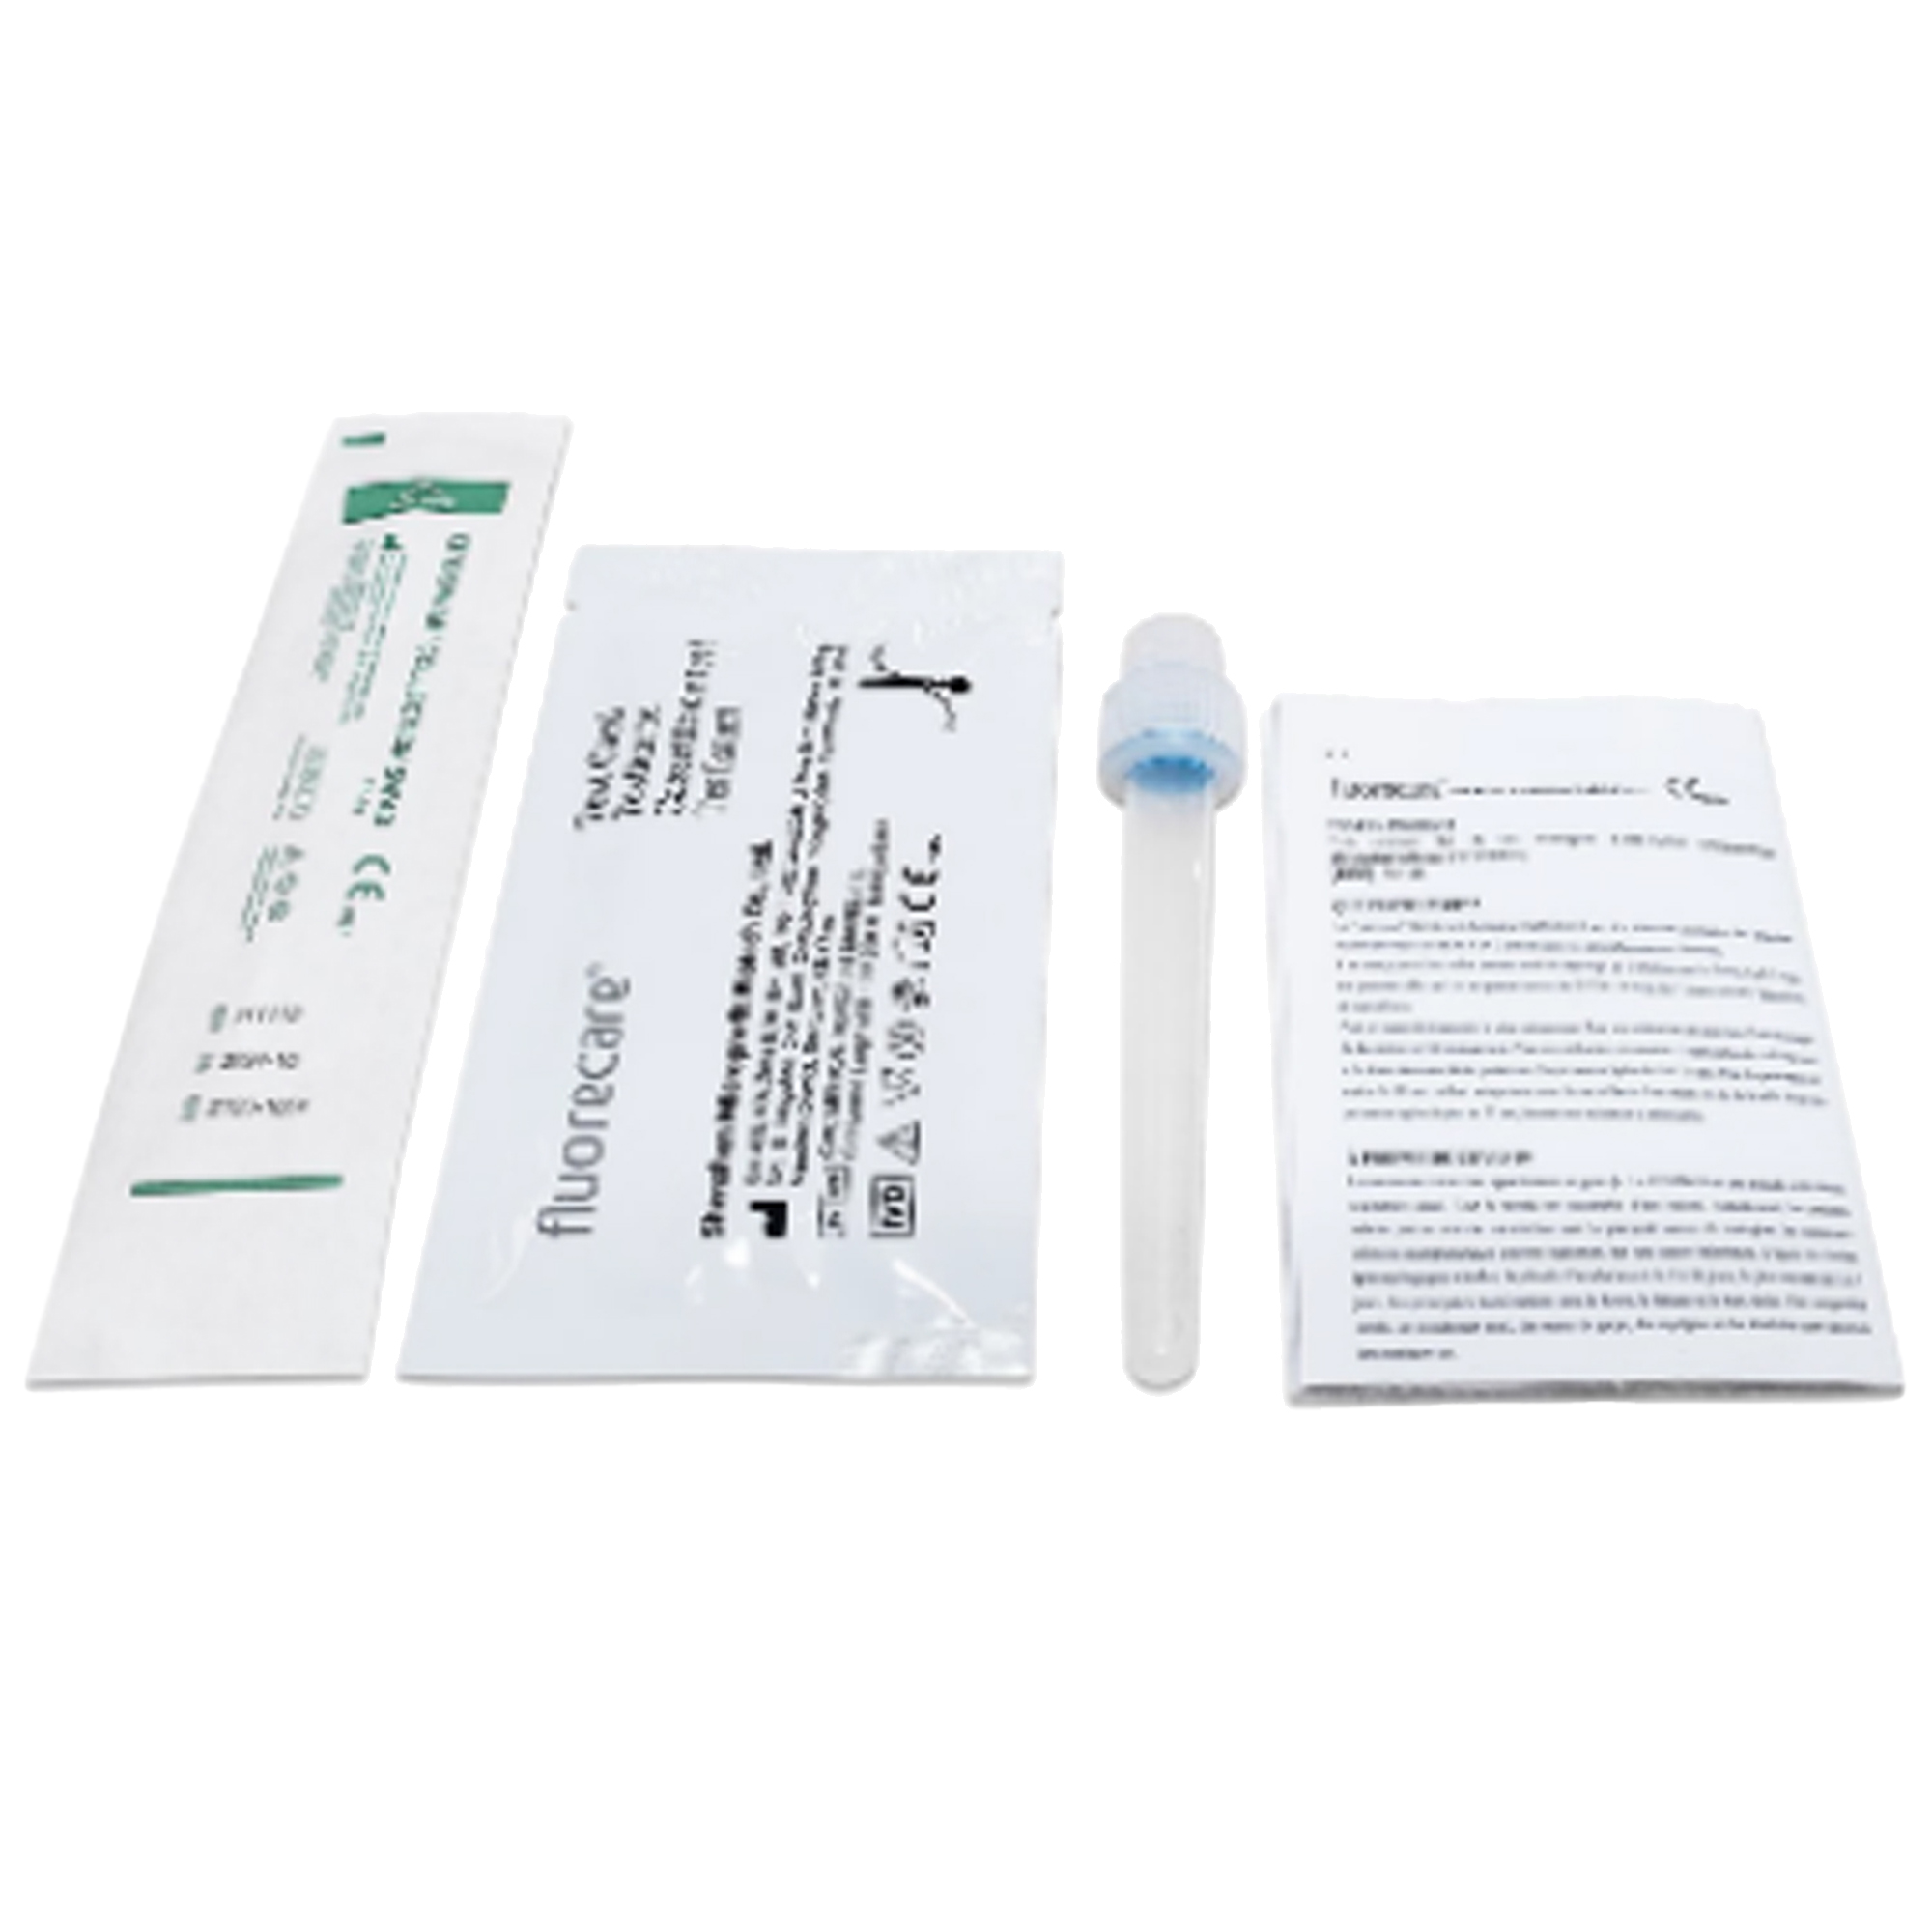 Test antigenico rapido SARS-COV-2 Fluorecare - per autodiagnosi - CE1434